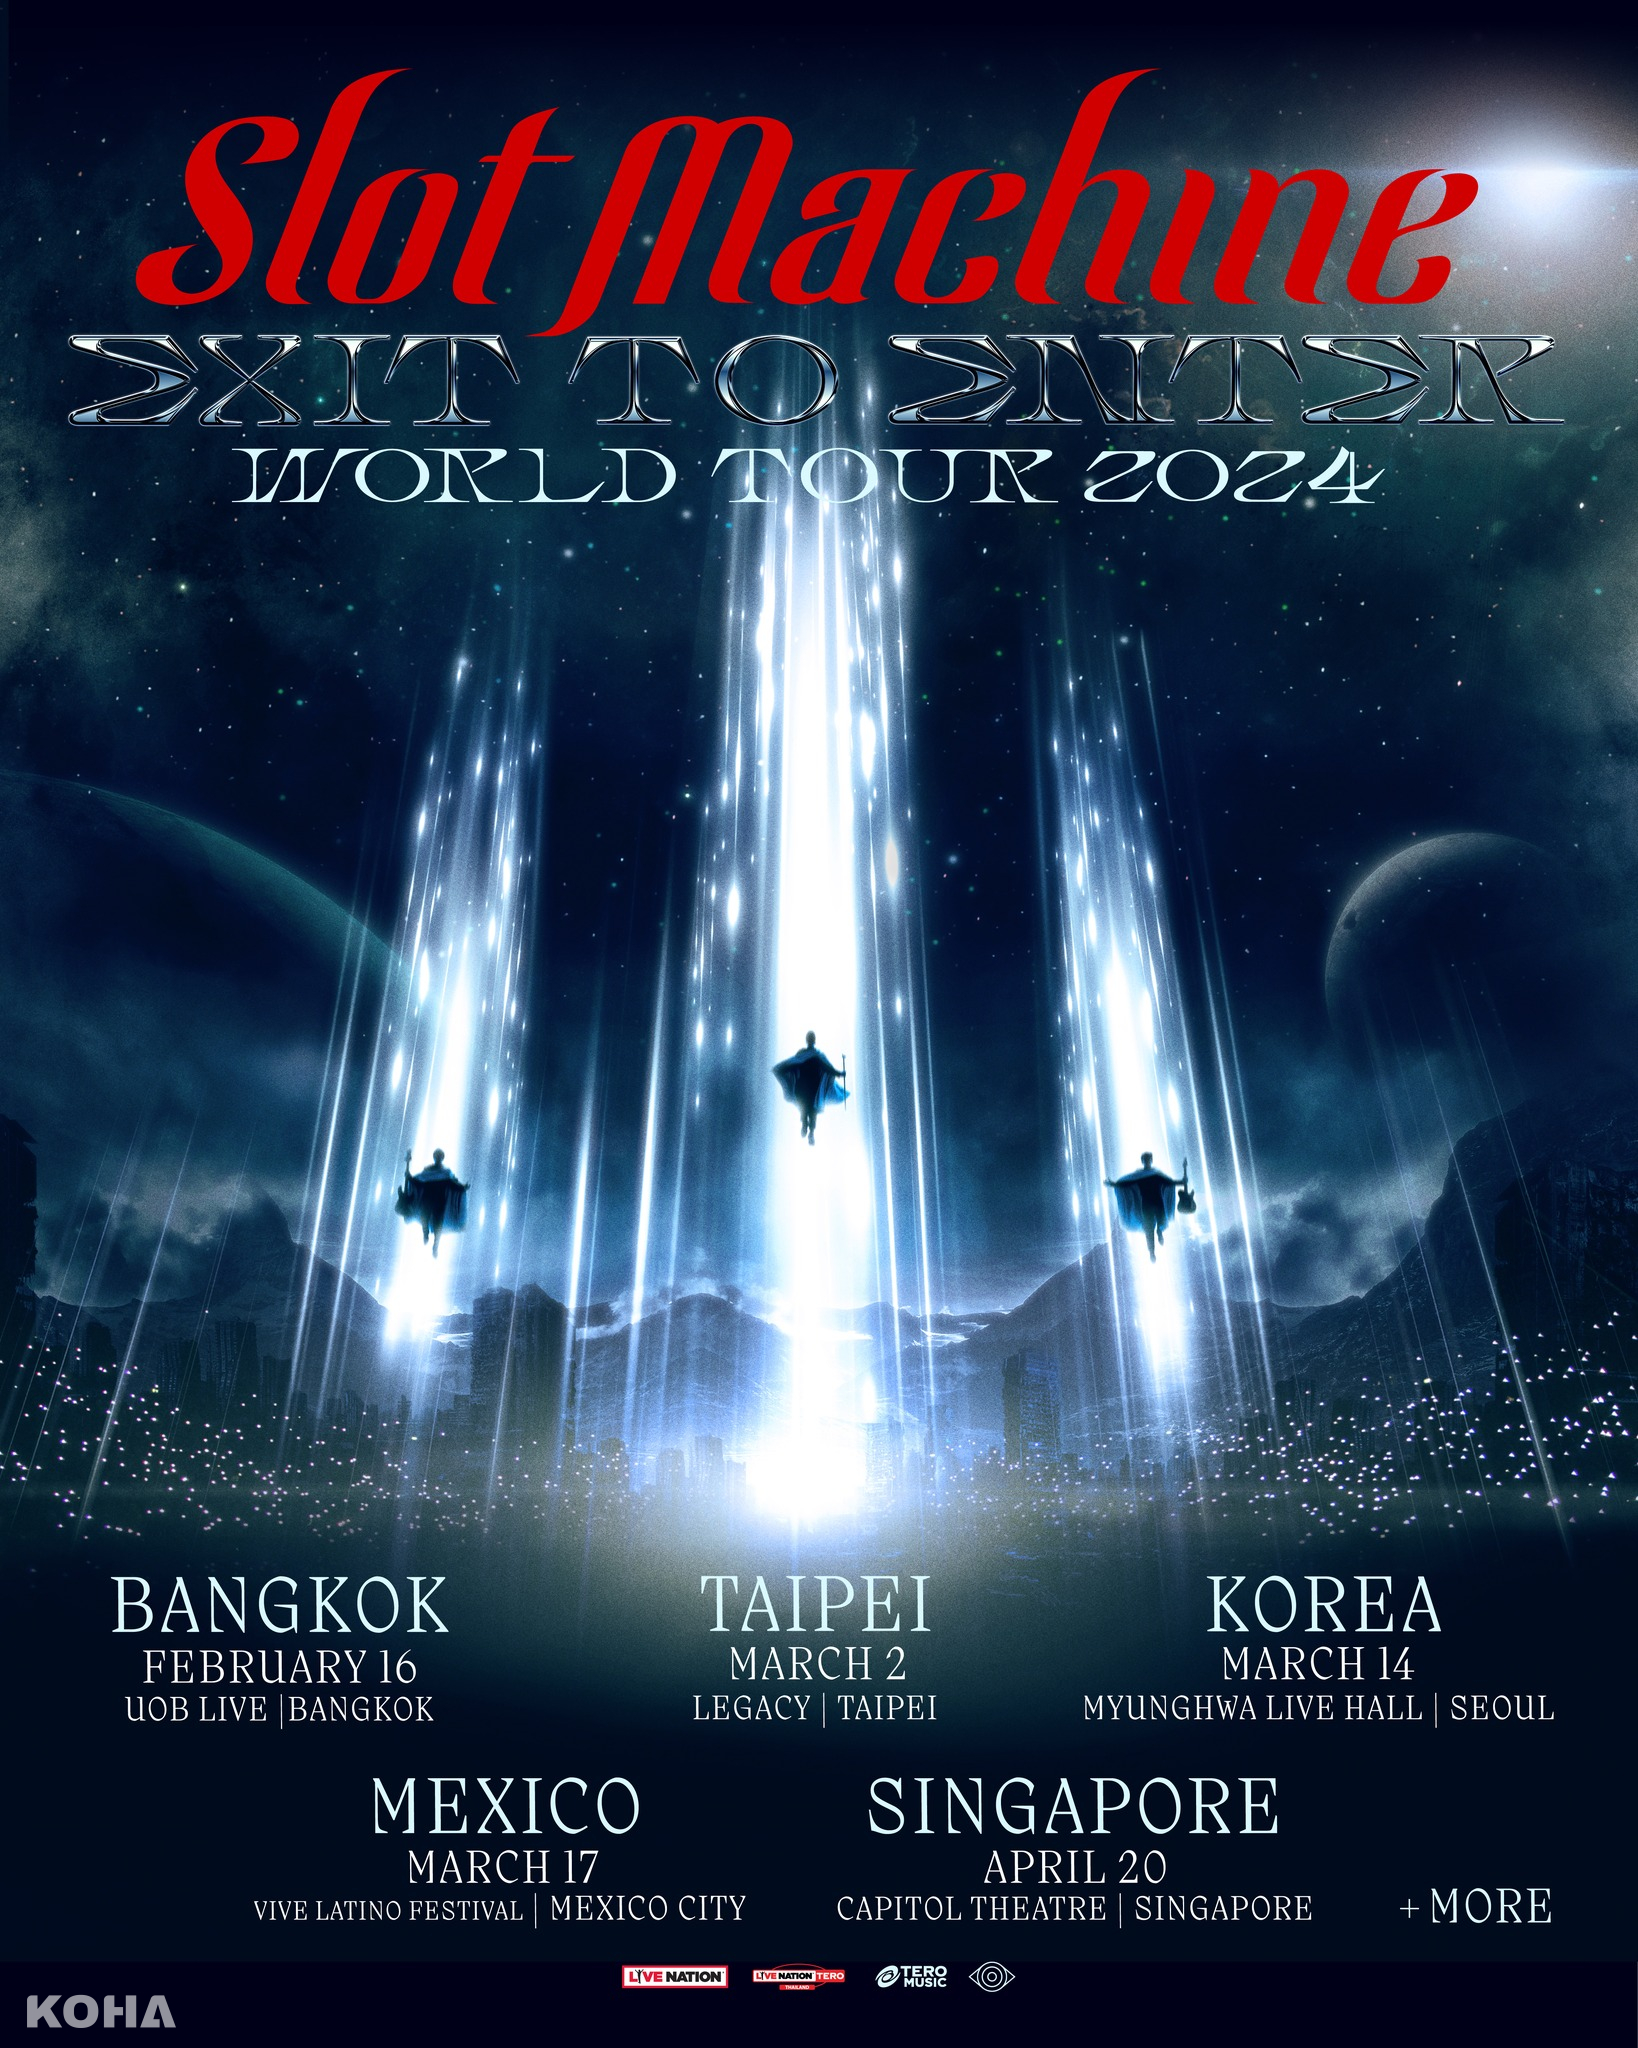 KOHA Concert｜Legacy Taipei 音樂展演空間｜Slot Machine演唱會2024 Slot Machine EXIT TO ENTER WORLD TOUR 2024